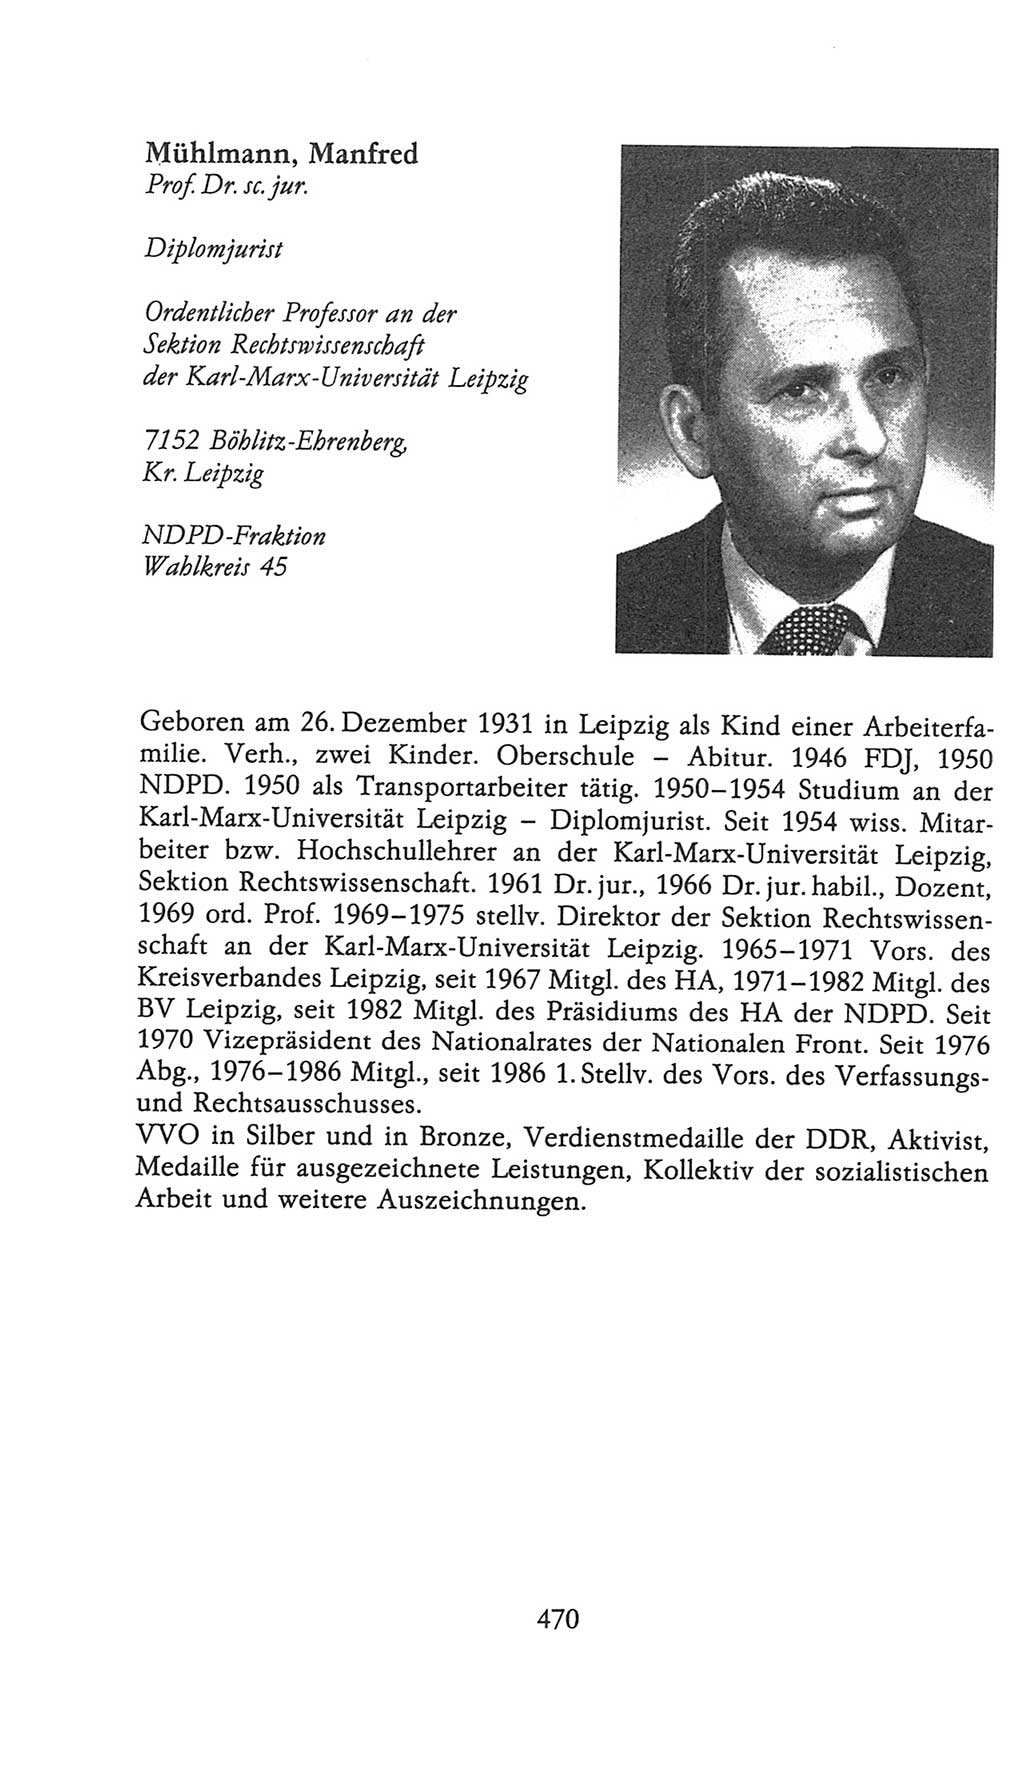 Volkskammer (VK) der Deutschen Demokratischen Republik (DDR), 9. Wahlperiode 1986-1990, Seite 470 (VK. DDR 9. WP. 1986-1990, S. 470)